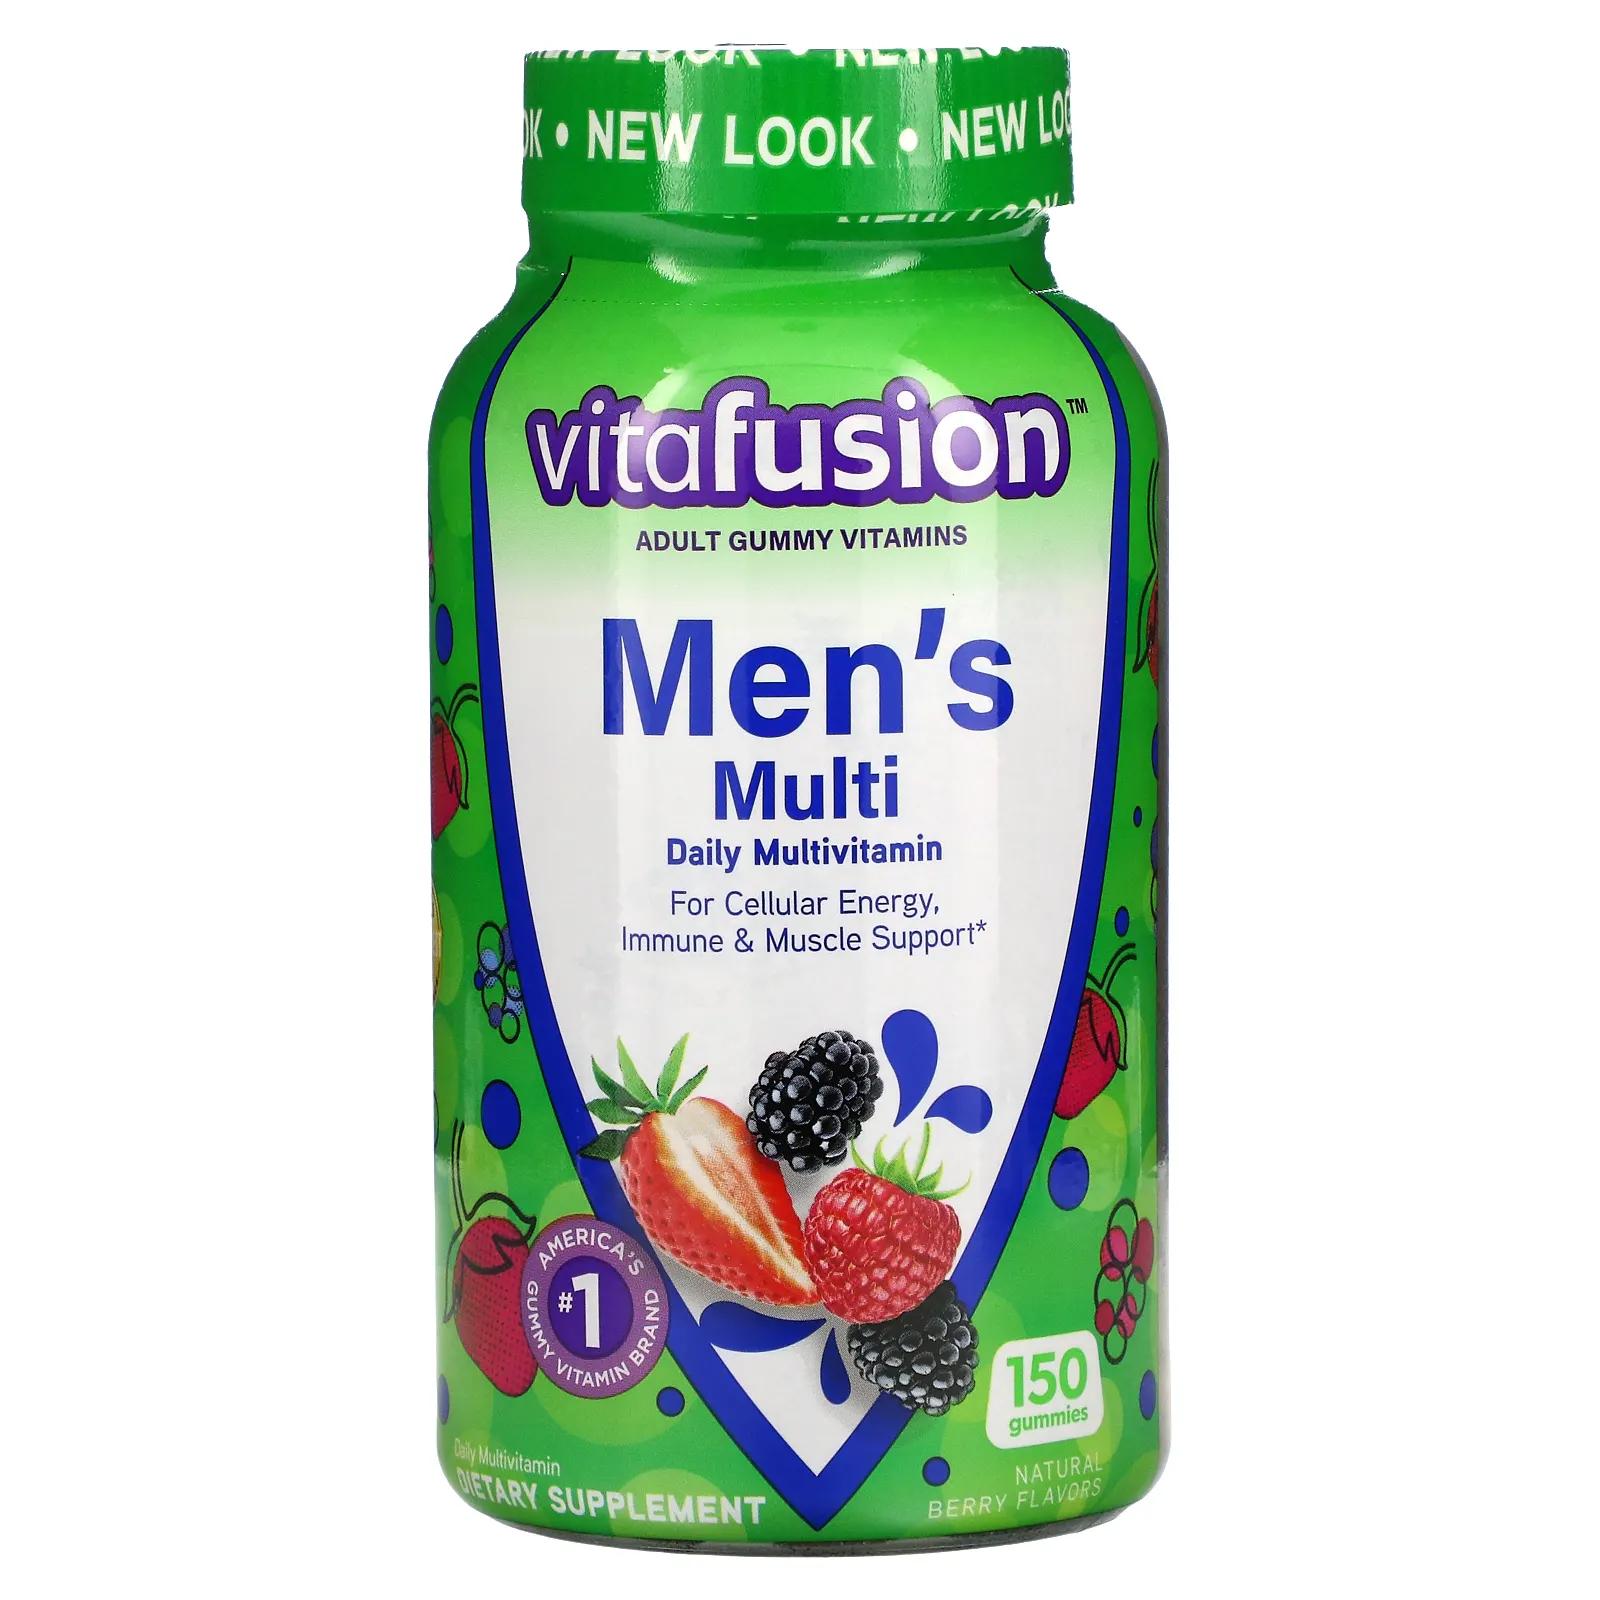 VitaFusion Комплексные мультивитамины для мужчин натуральные ягодные вкусы 150 жевательных таблеток yumv s мультивитамины с минералами приятные фруктовые вкусы 60 желейных таблеток